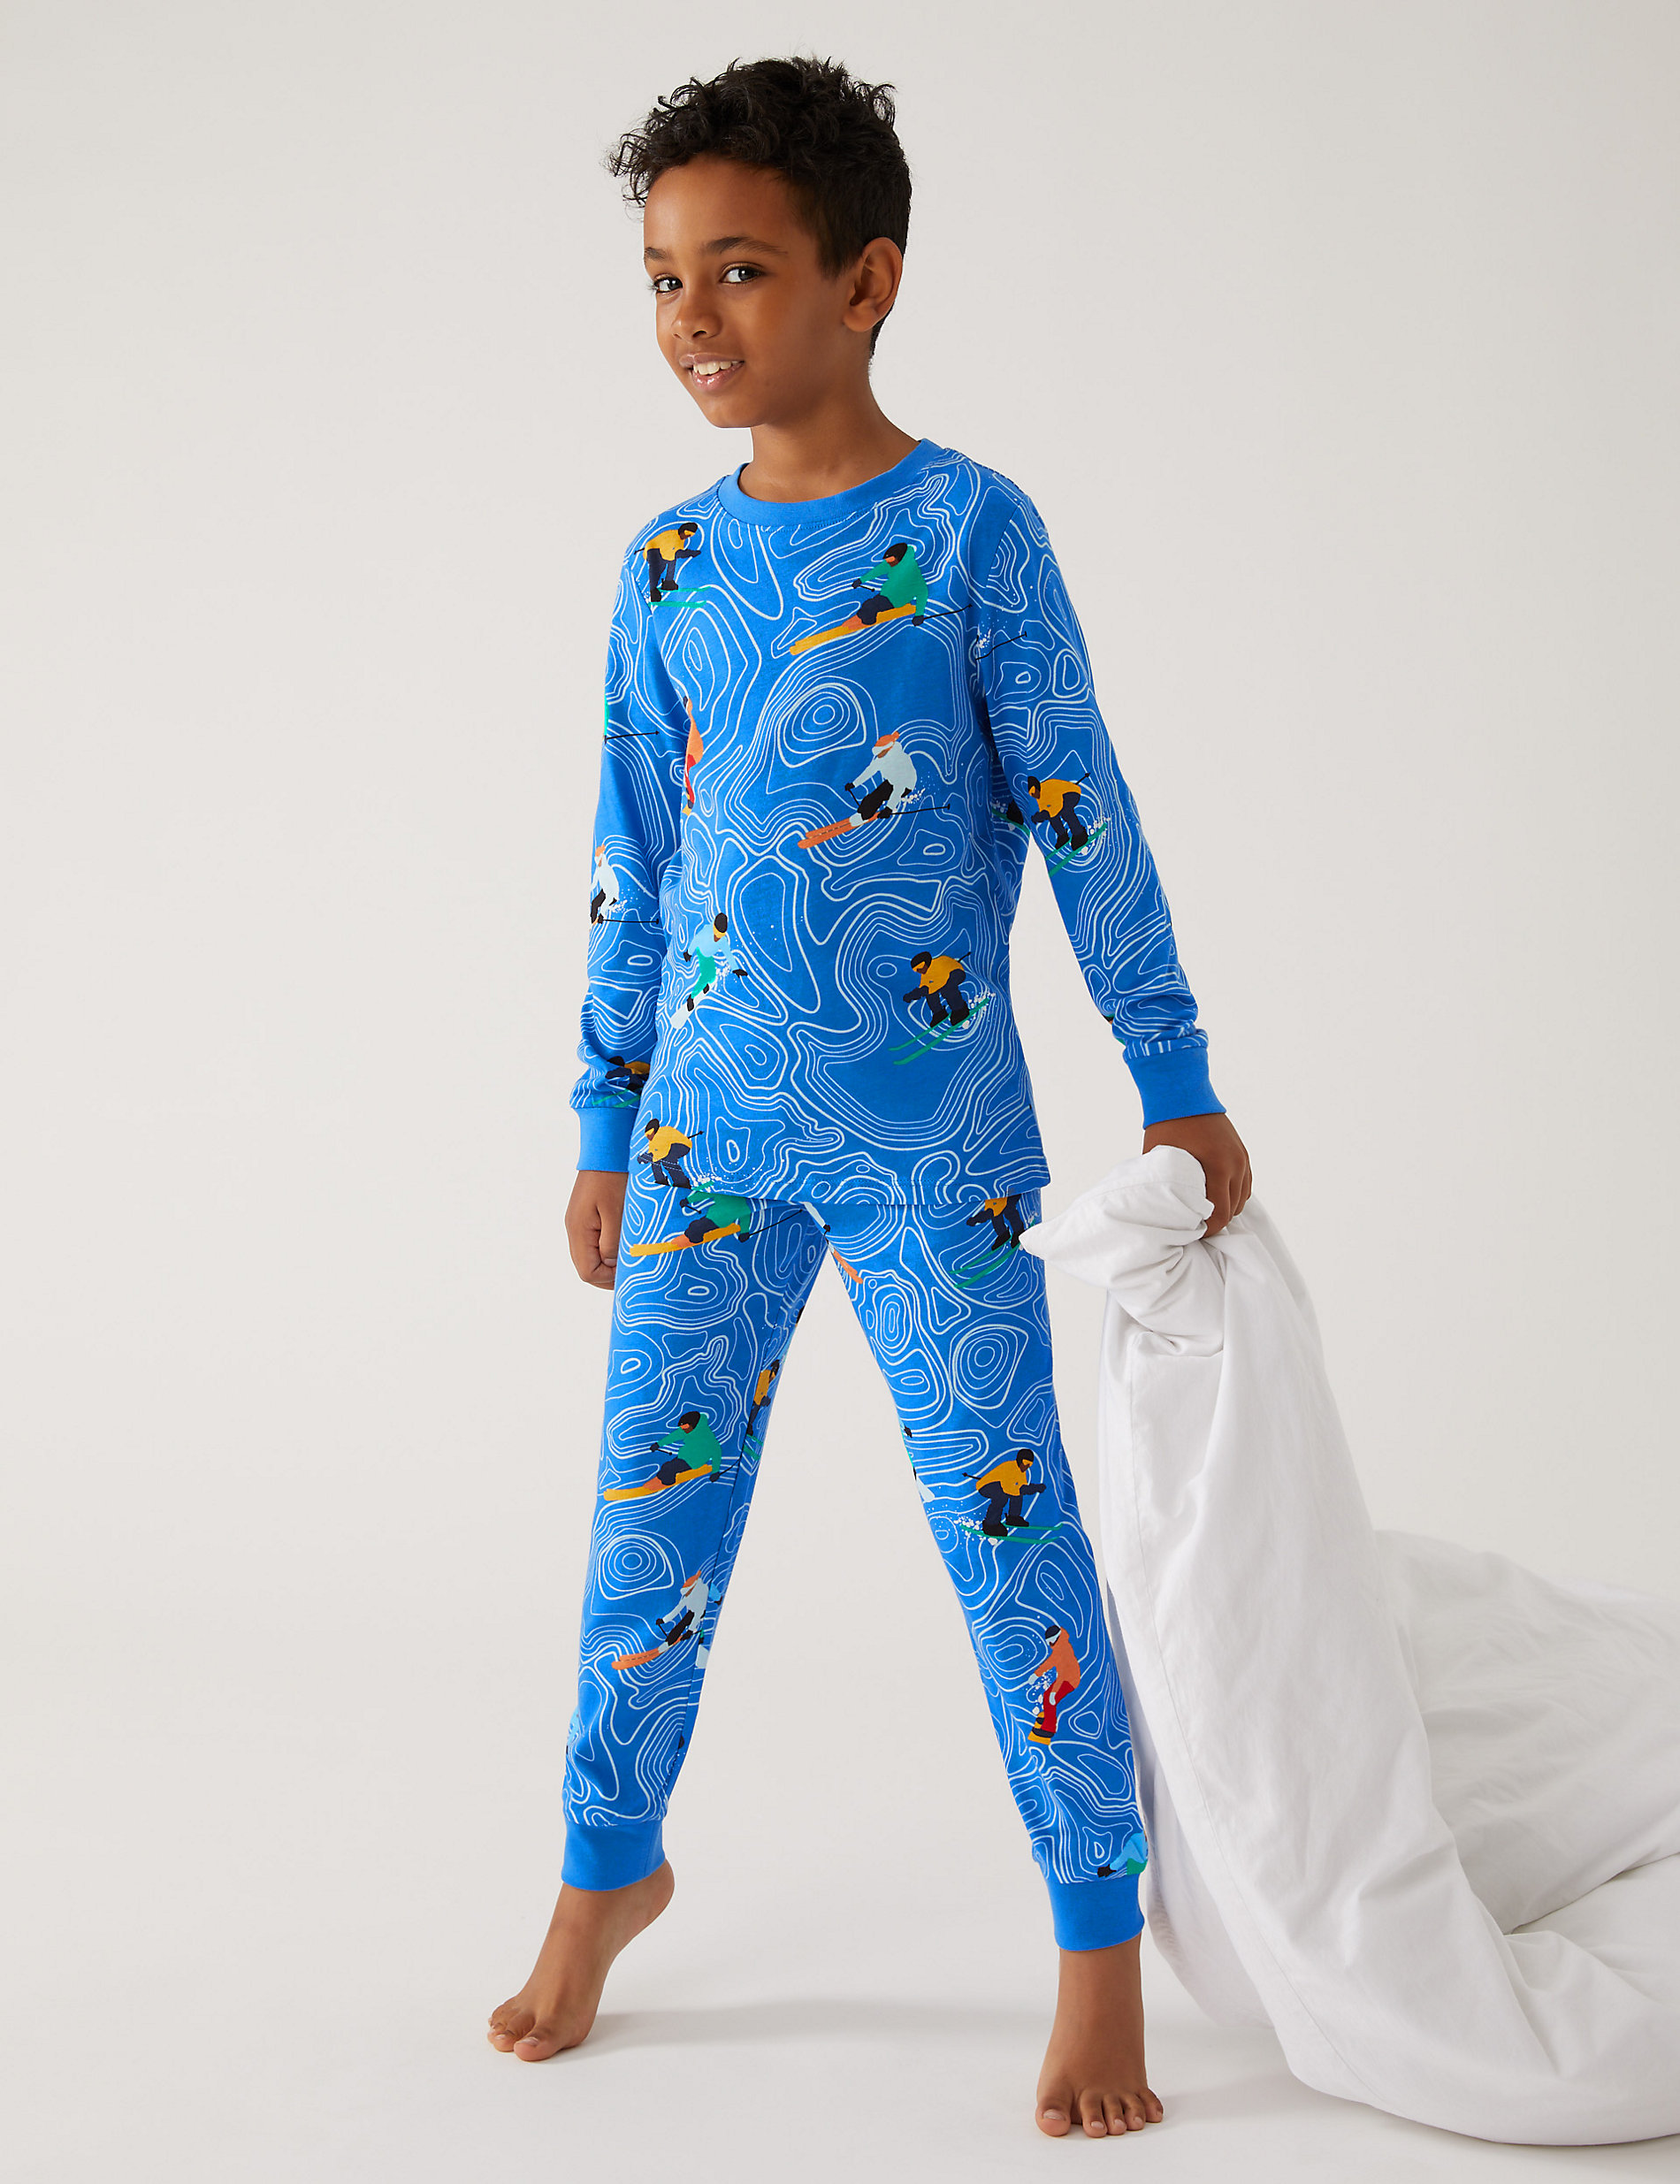 Qtake Fashion Girls Pajamas Sets Kids Pjs Long Sleeve Children Sleepwear Cotton Winter Toddler Clothes 2T-12 Years 